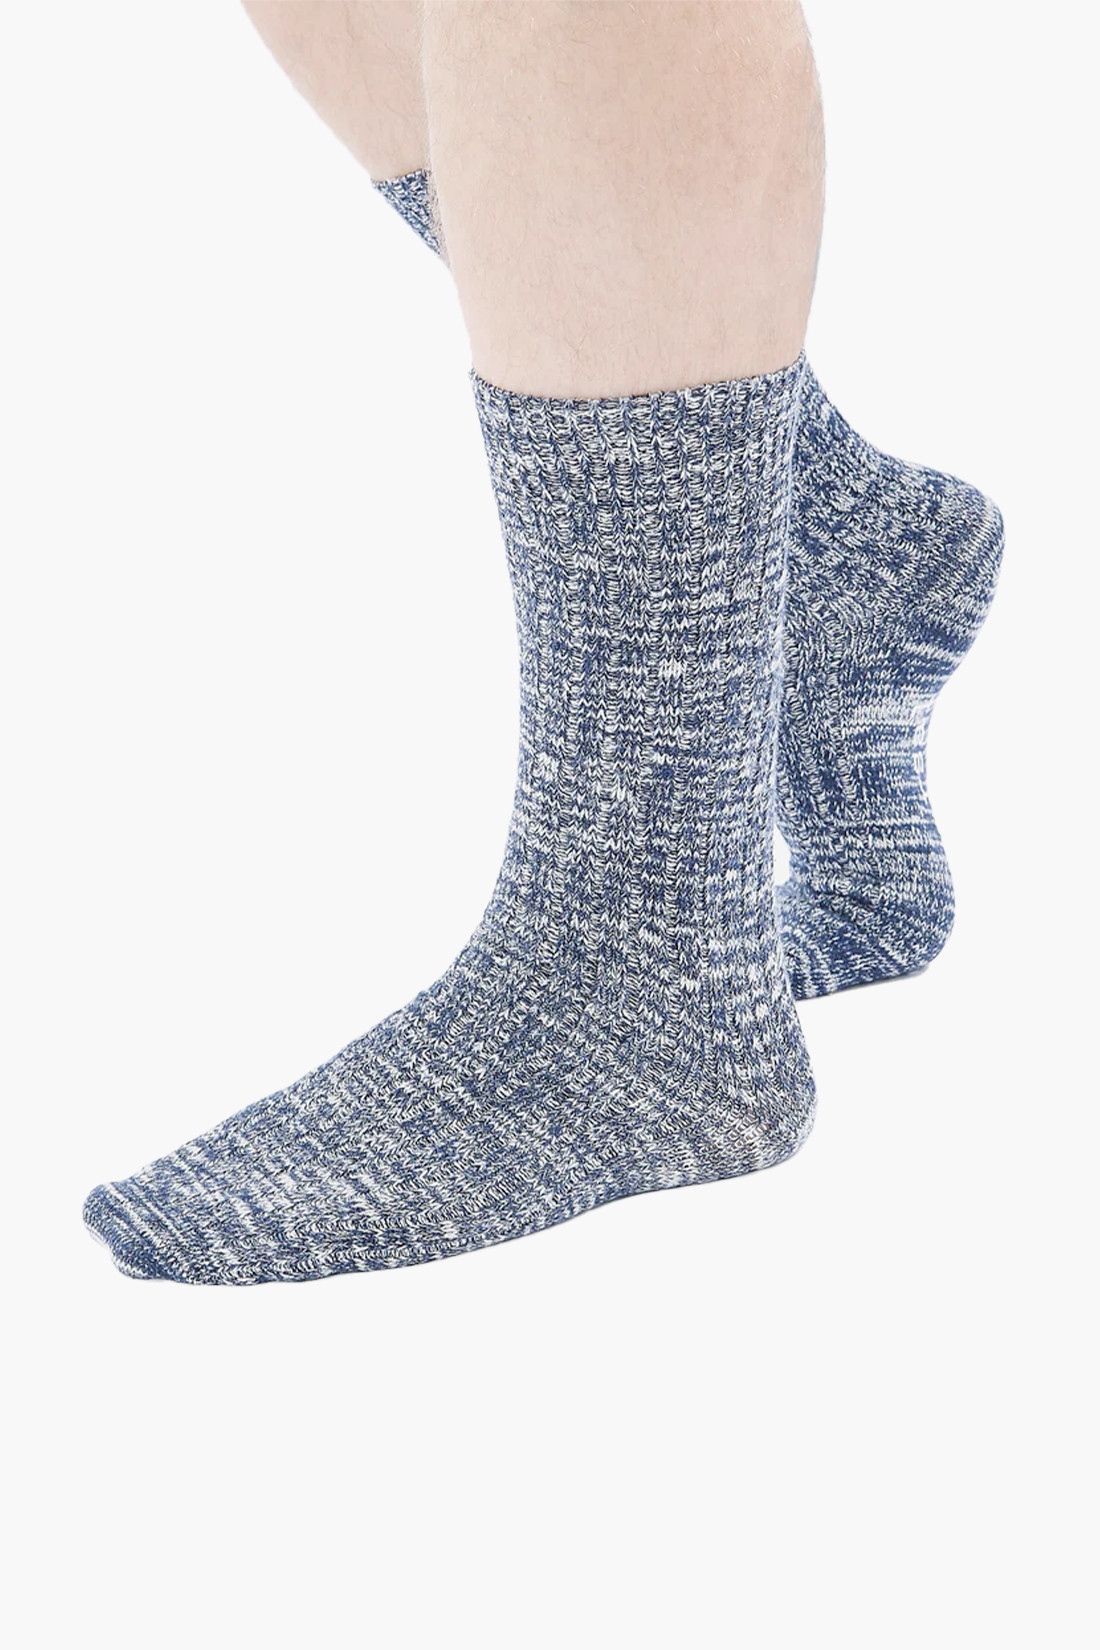 Slub sock knit Navy